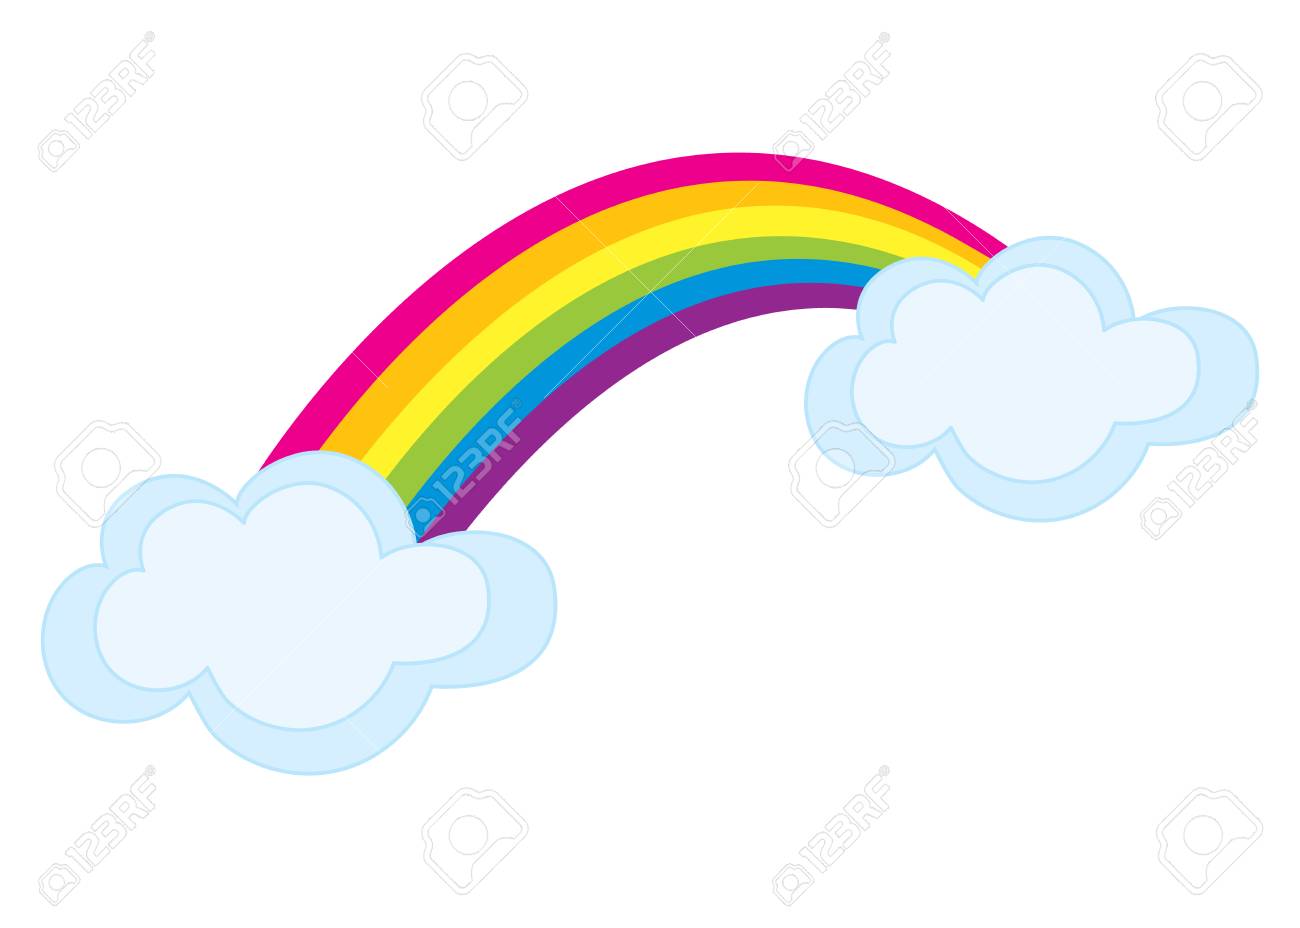 Vector colorful rainbow with clouds. Rainbow clipart. Rainbow...